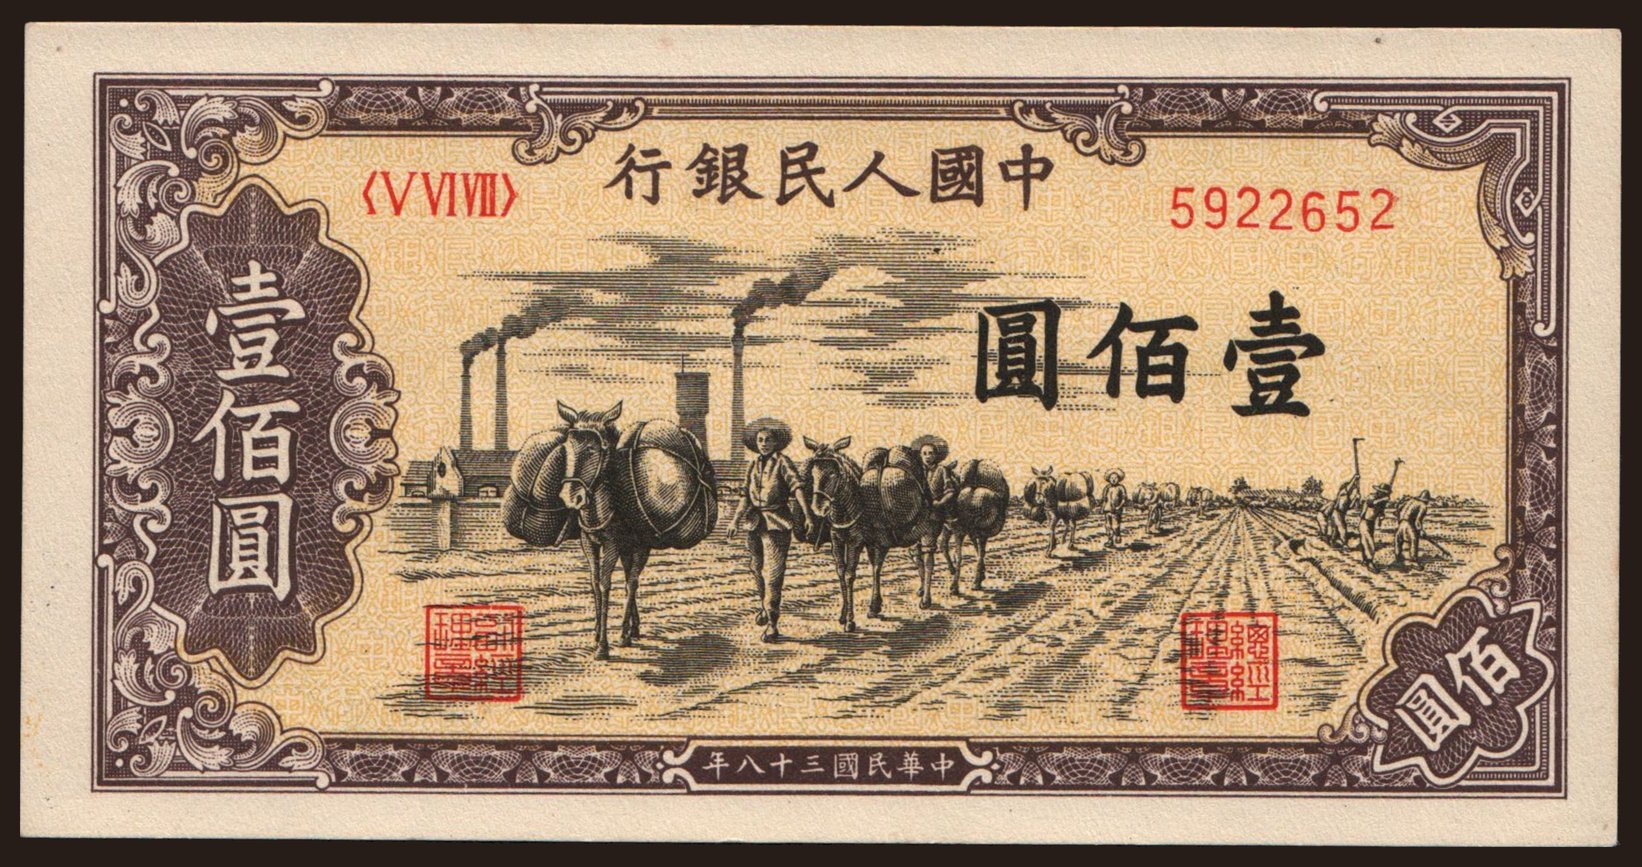 100 yuan, 1949